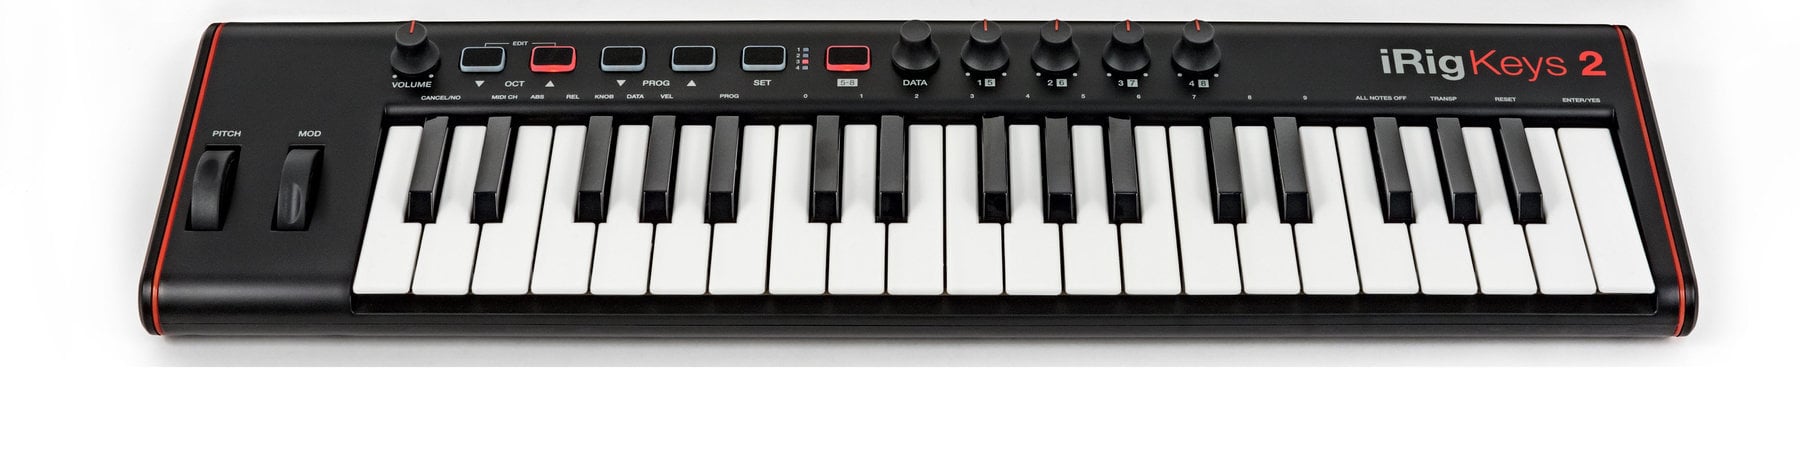 MIDI-koskettimet IK Multimedia iRig Keys 2